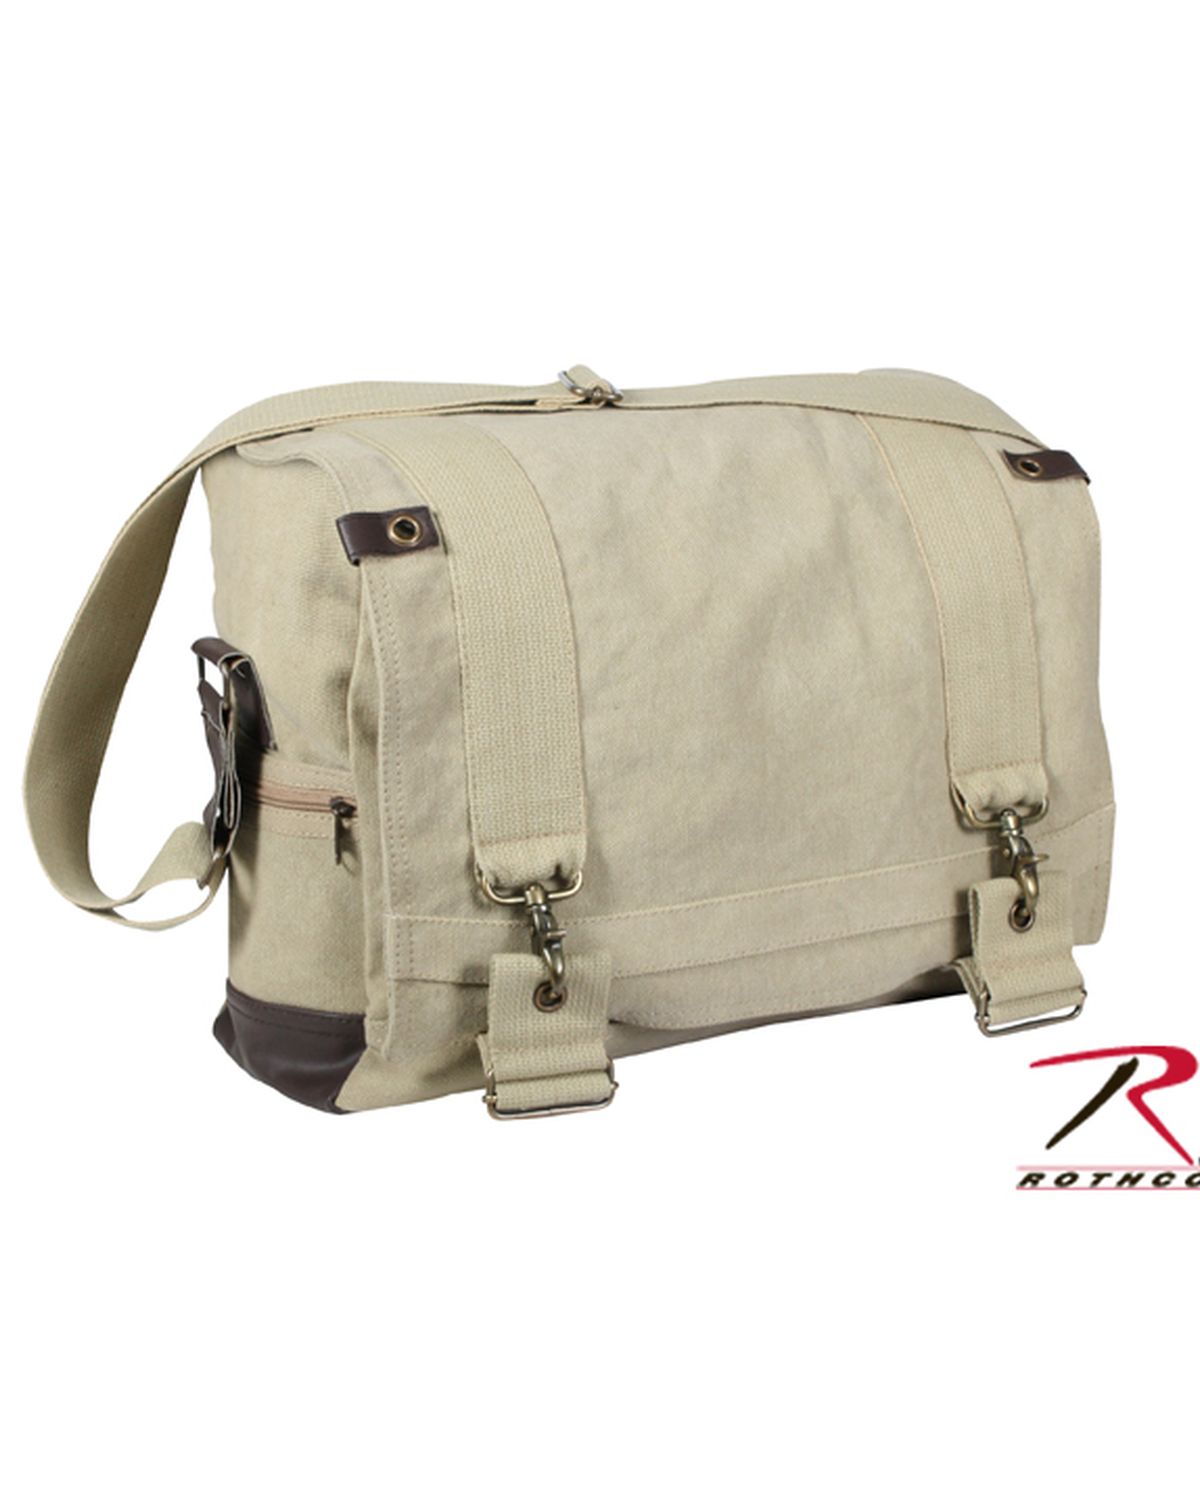 Rothco Classic Canvas Messenger Bag